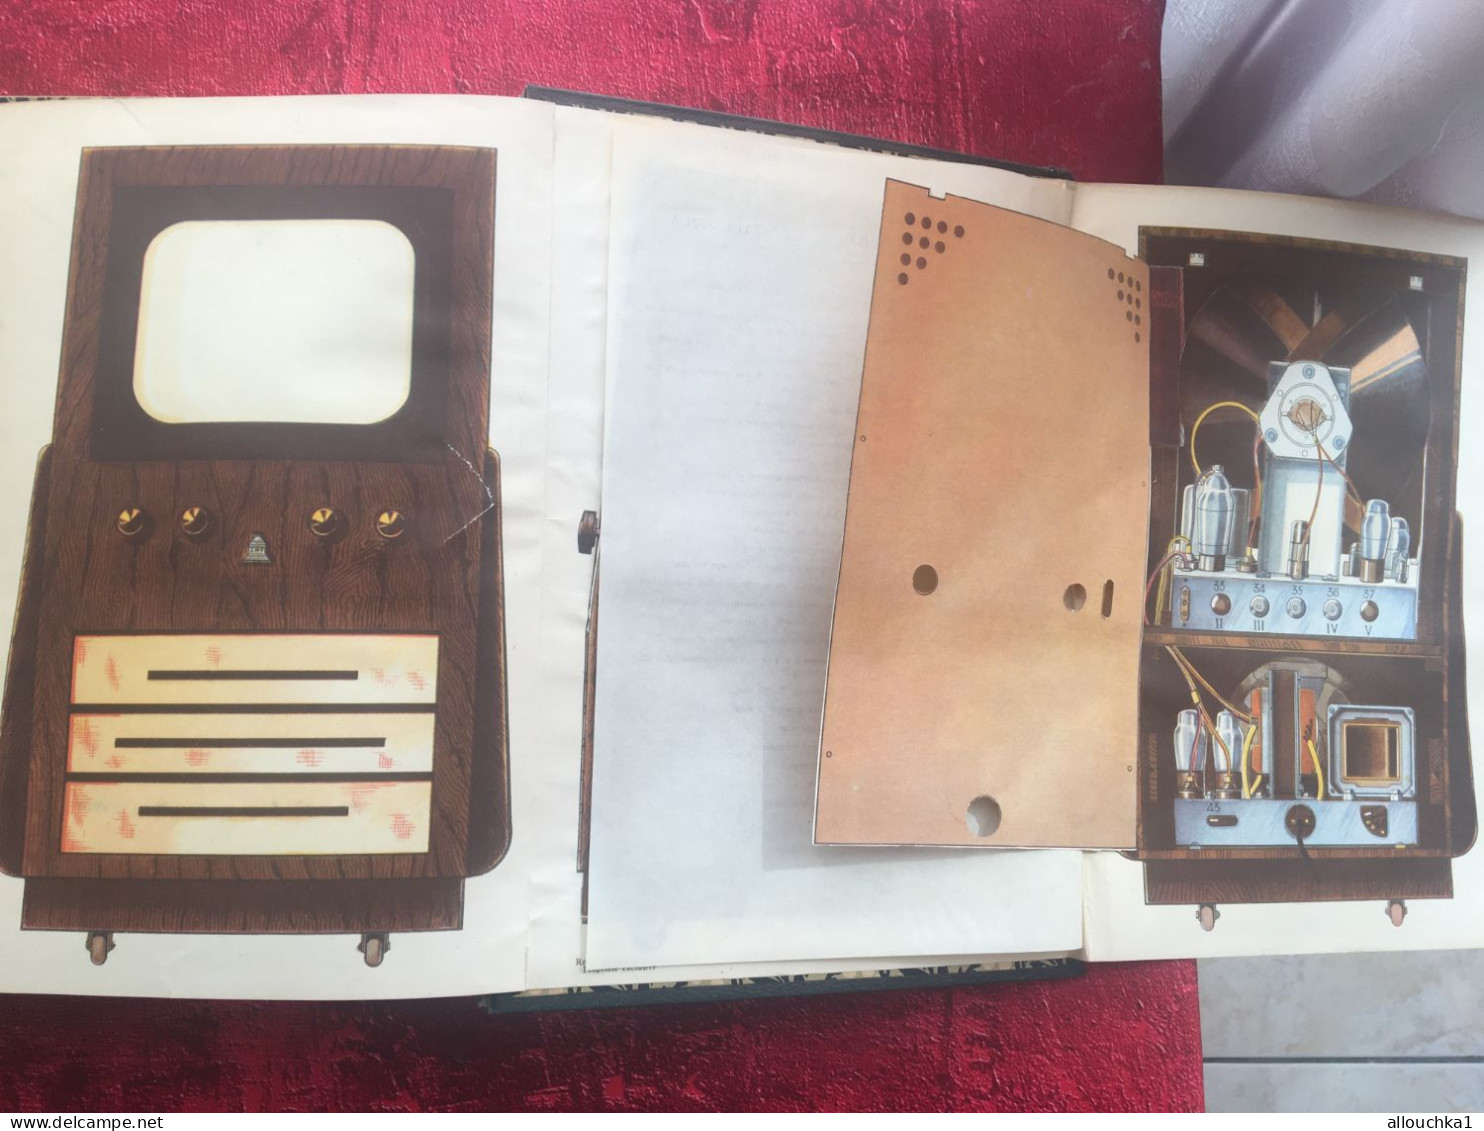 1952 -Encyclopédie Pratique de Mécanique & D'électricité-Tome III : Henri Desarces-Livre-pour Professionnels électricien